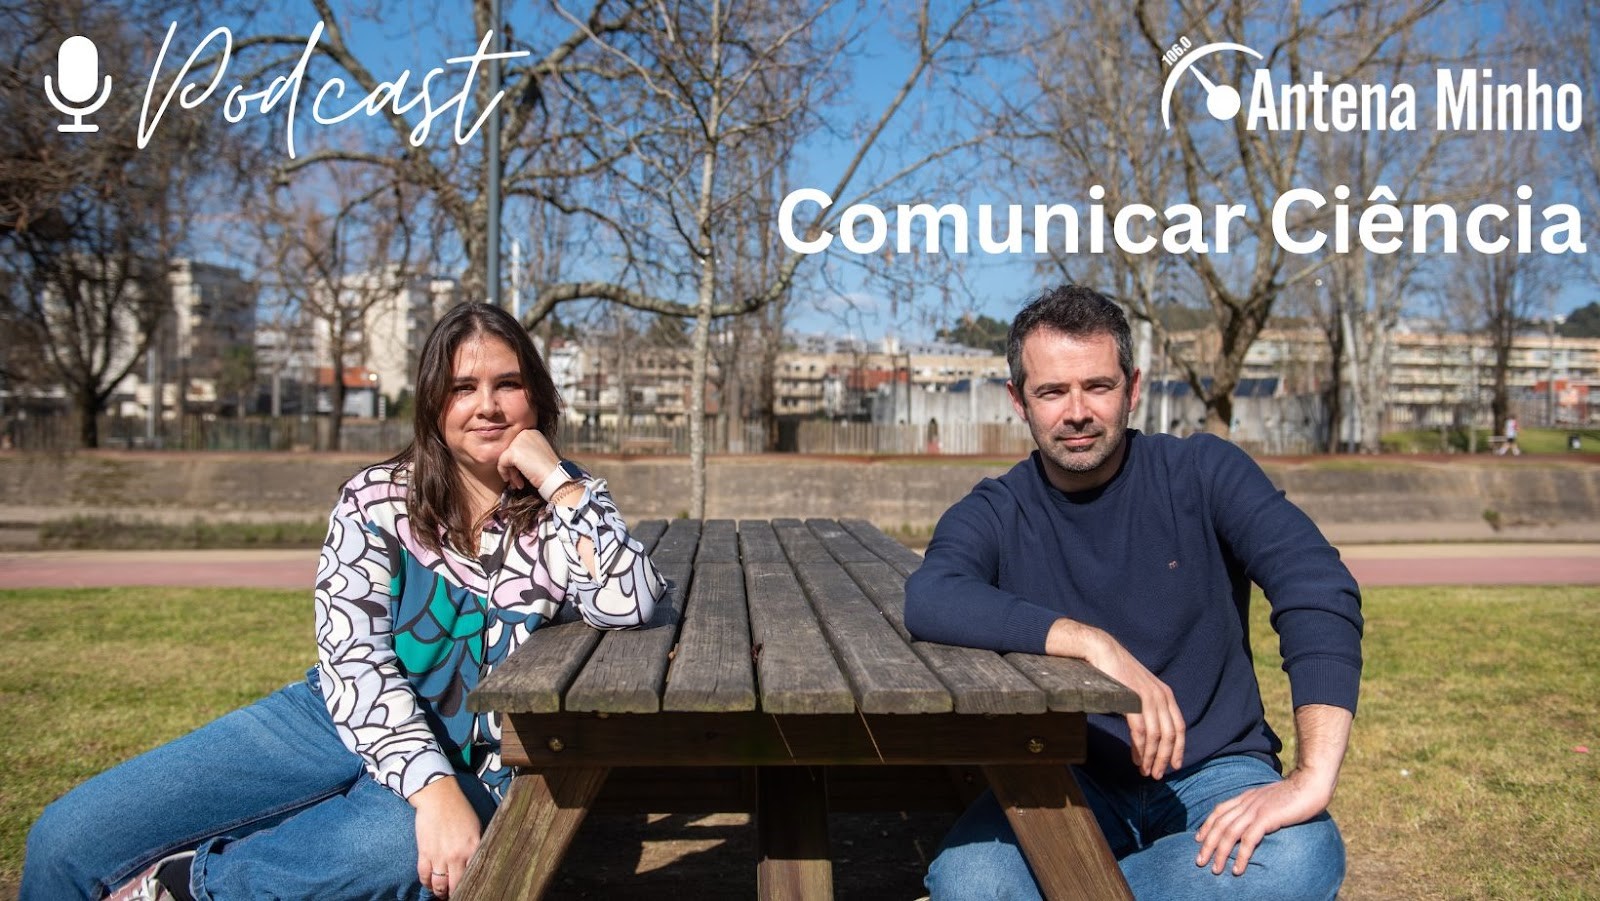 Catarina Loureiro e Jorge Dinis Oliveira, autores do Comunicar Ciência da Antena Minho